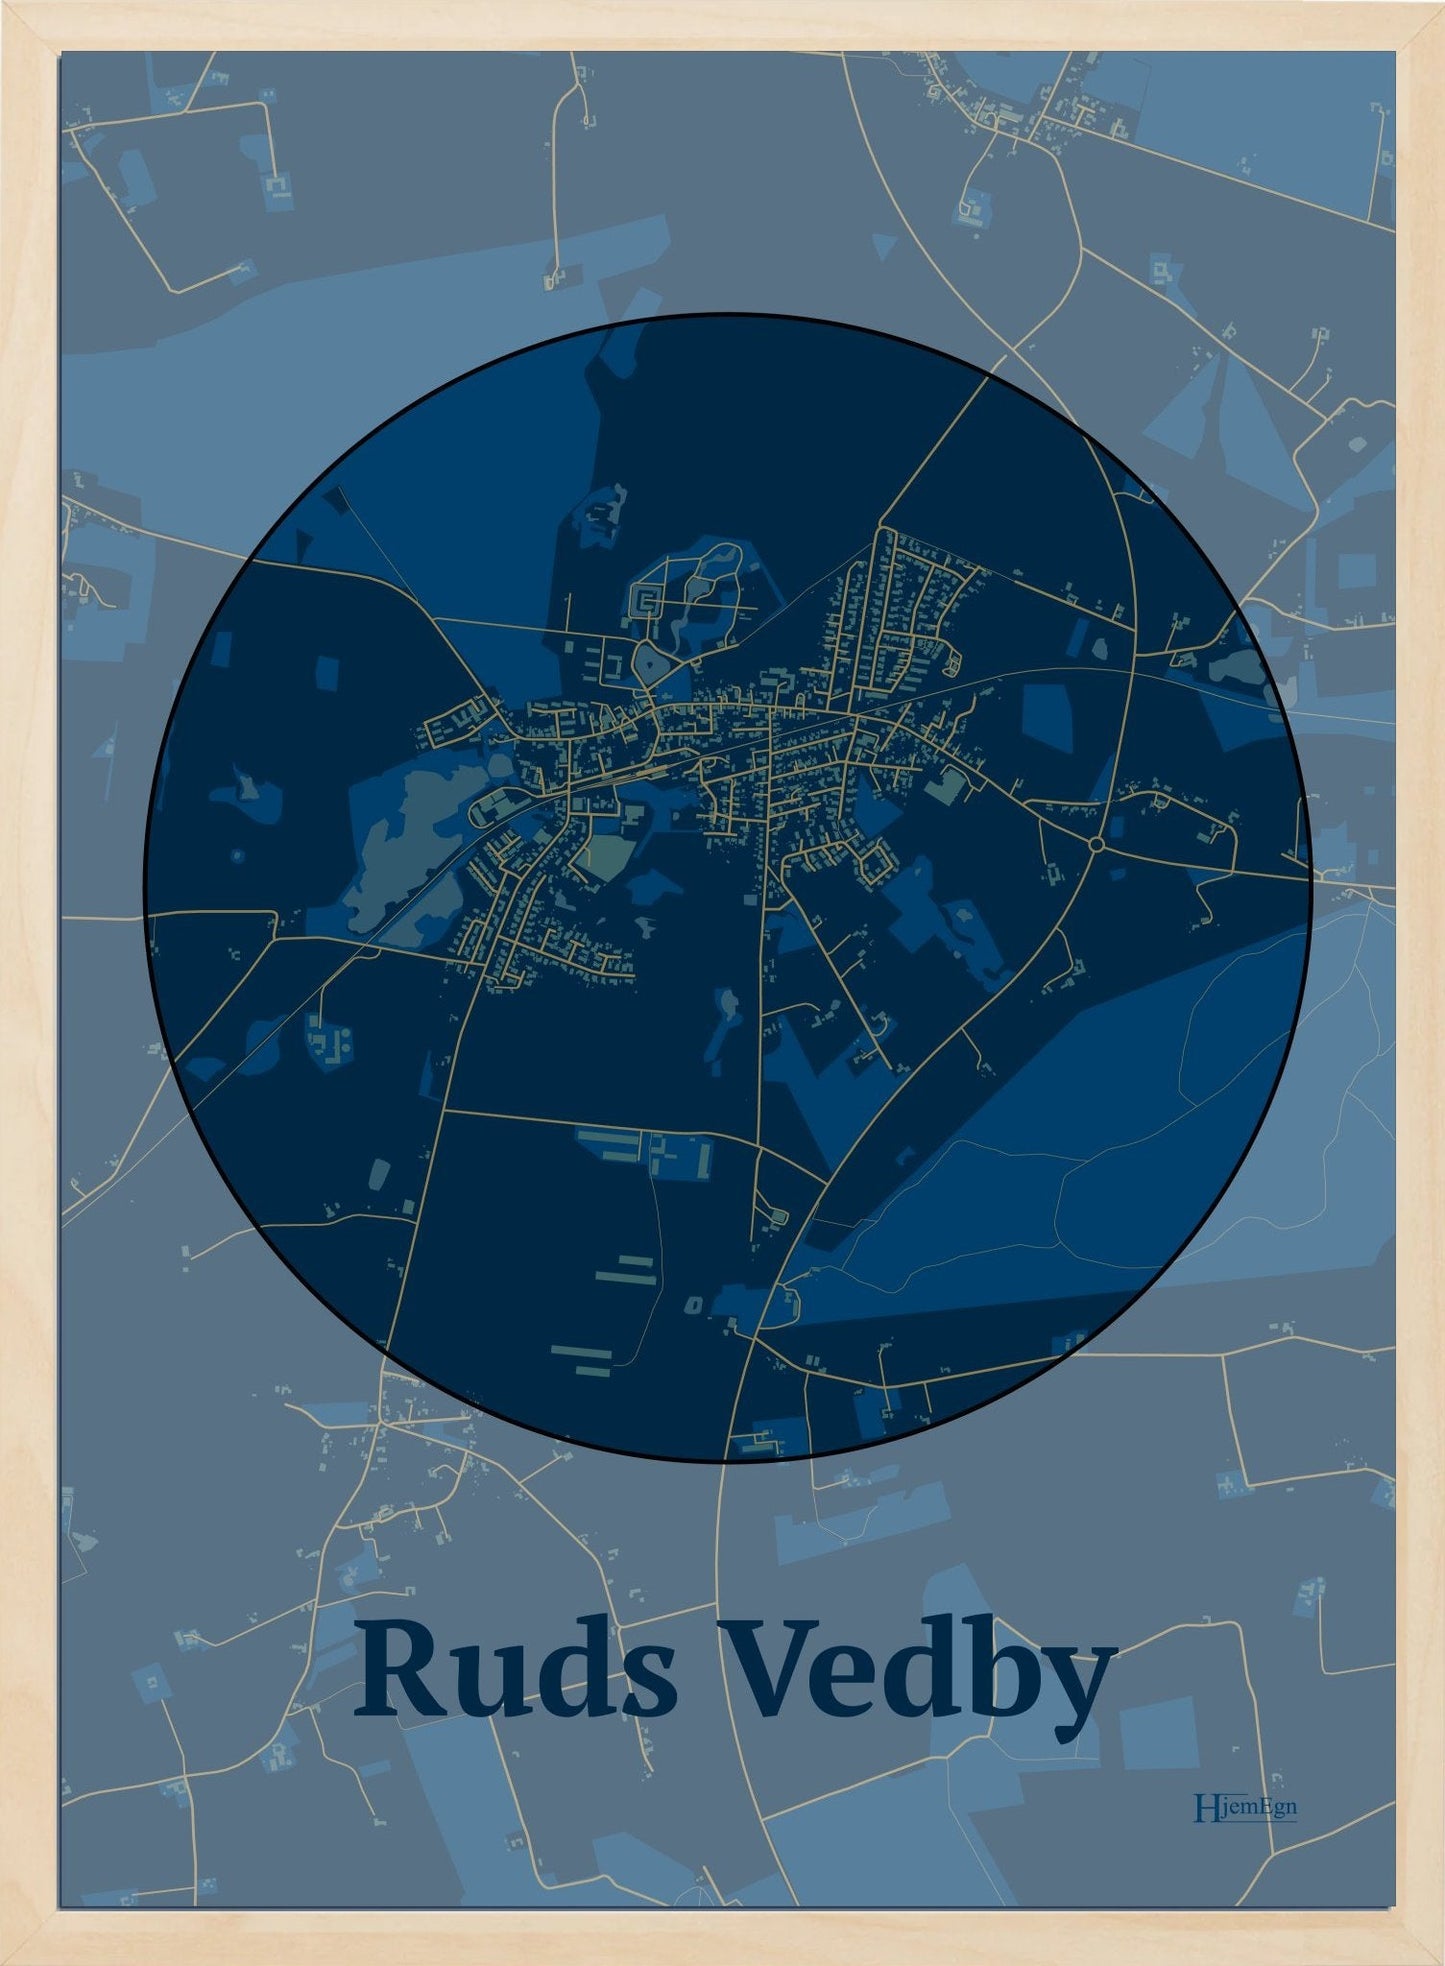 Ruds Vedby plakat i farve mørk blå og HjemEgn.dk design centrum. Design bykort for Ruds Vedby